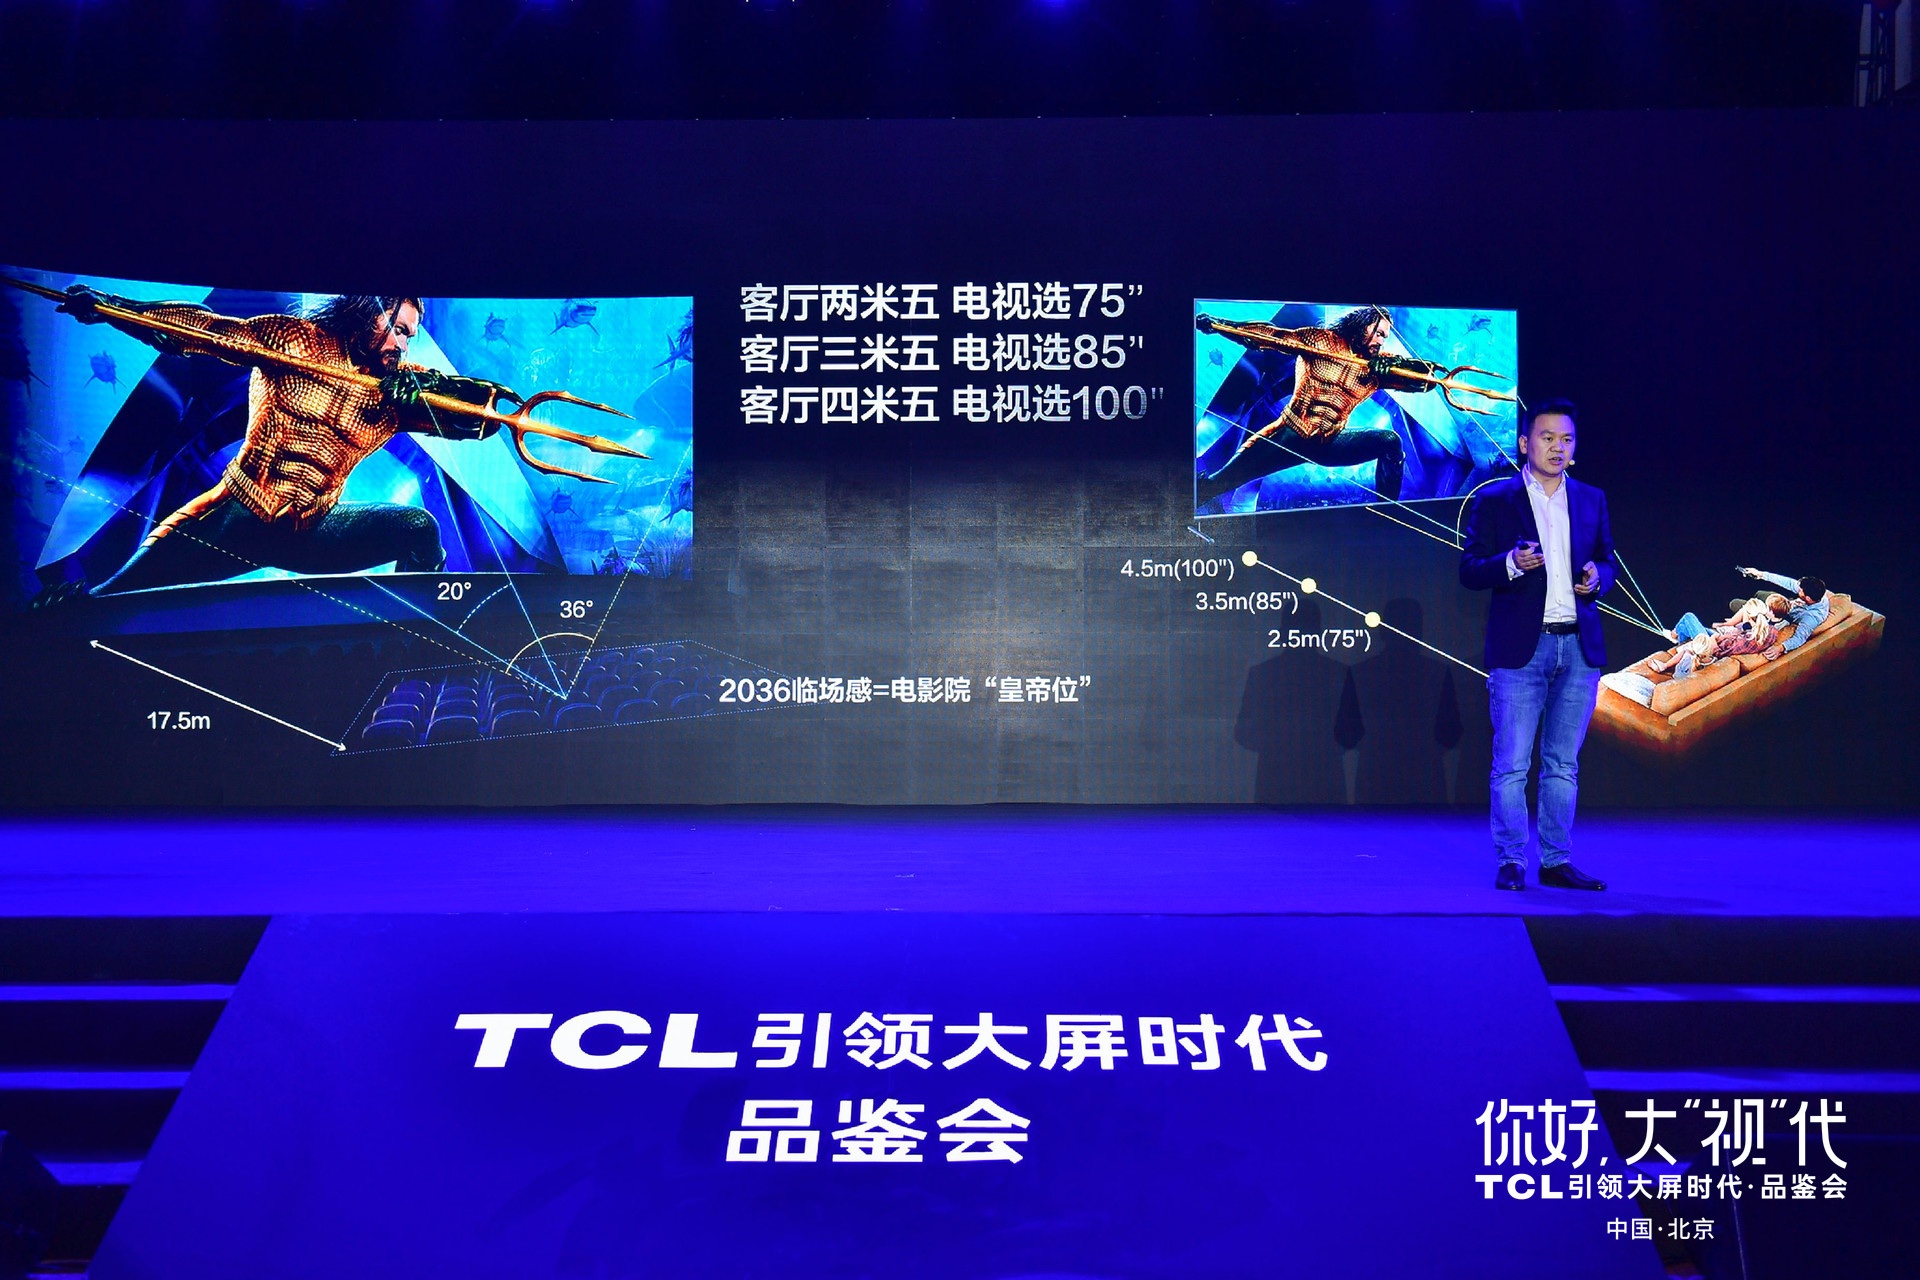 全球首款消费级8K电视19999问世 TCL全力推动8K普及 智能公会